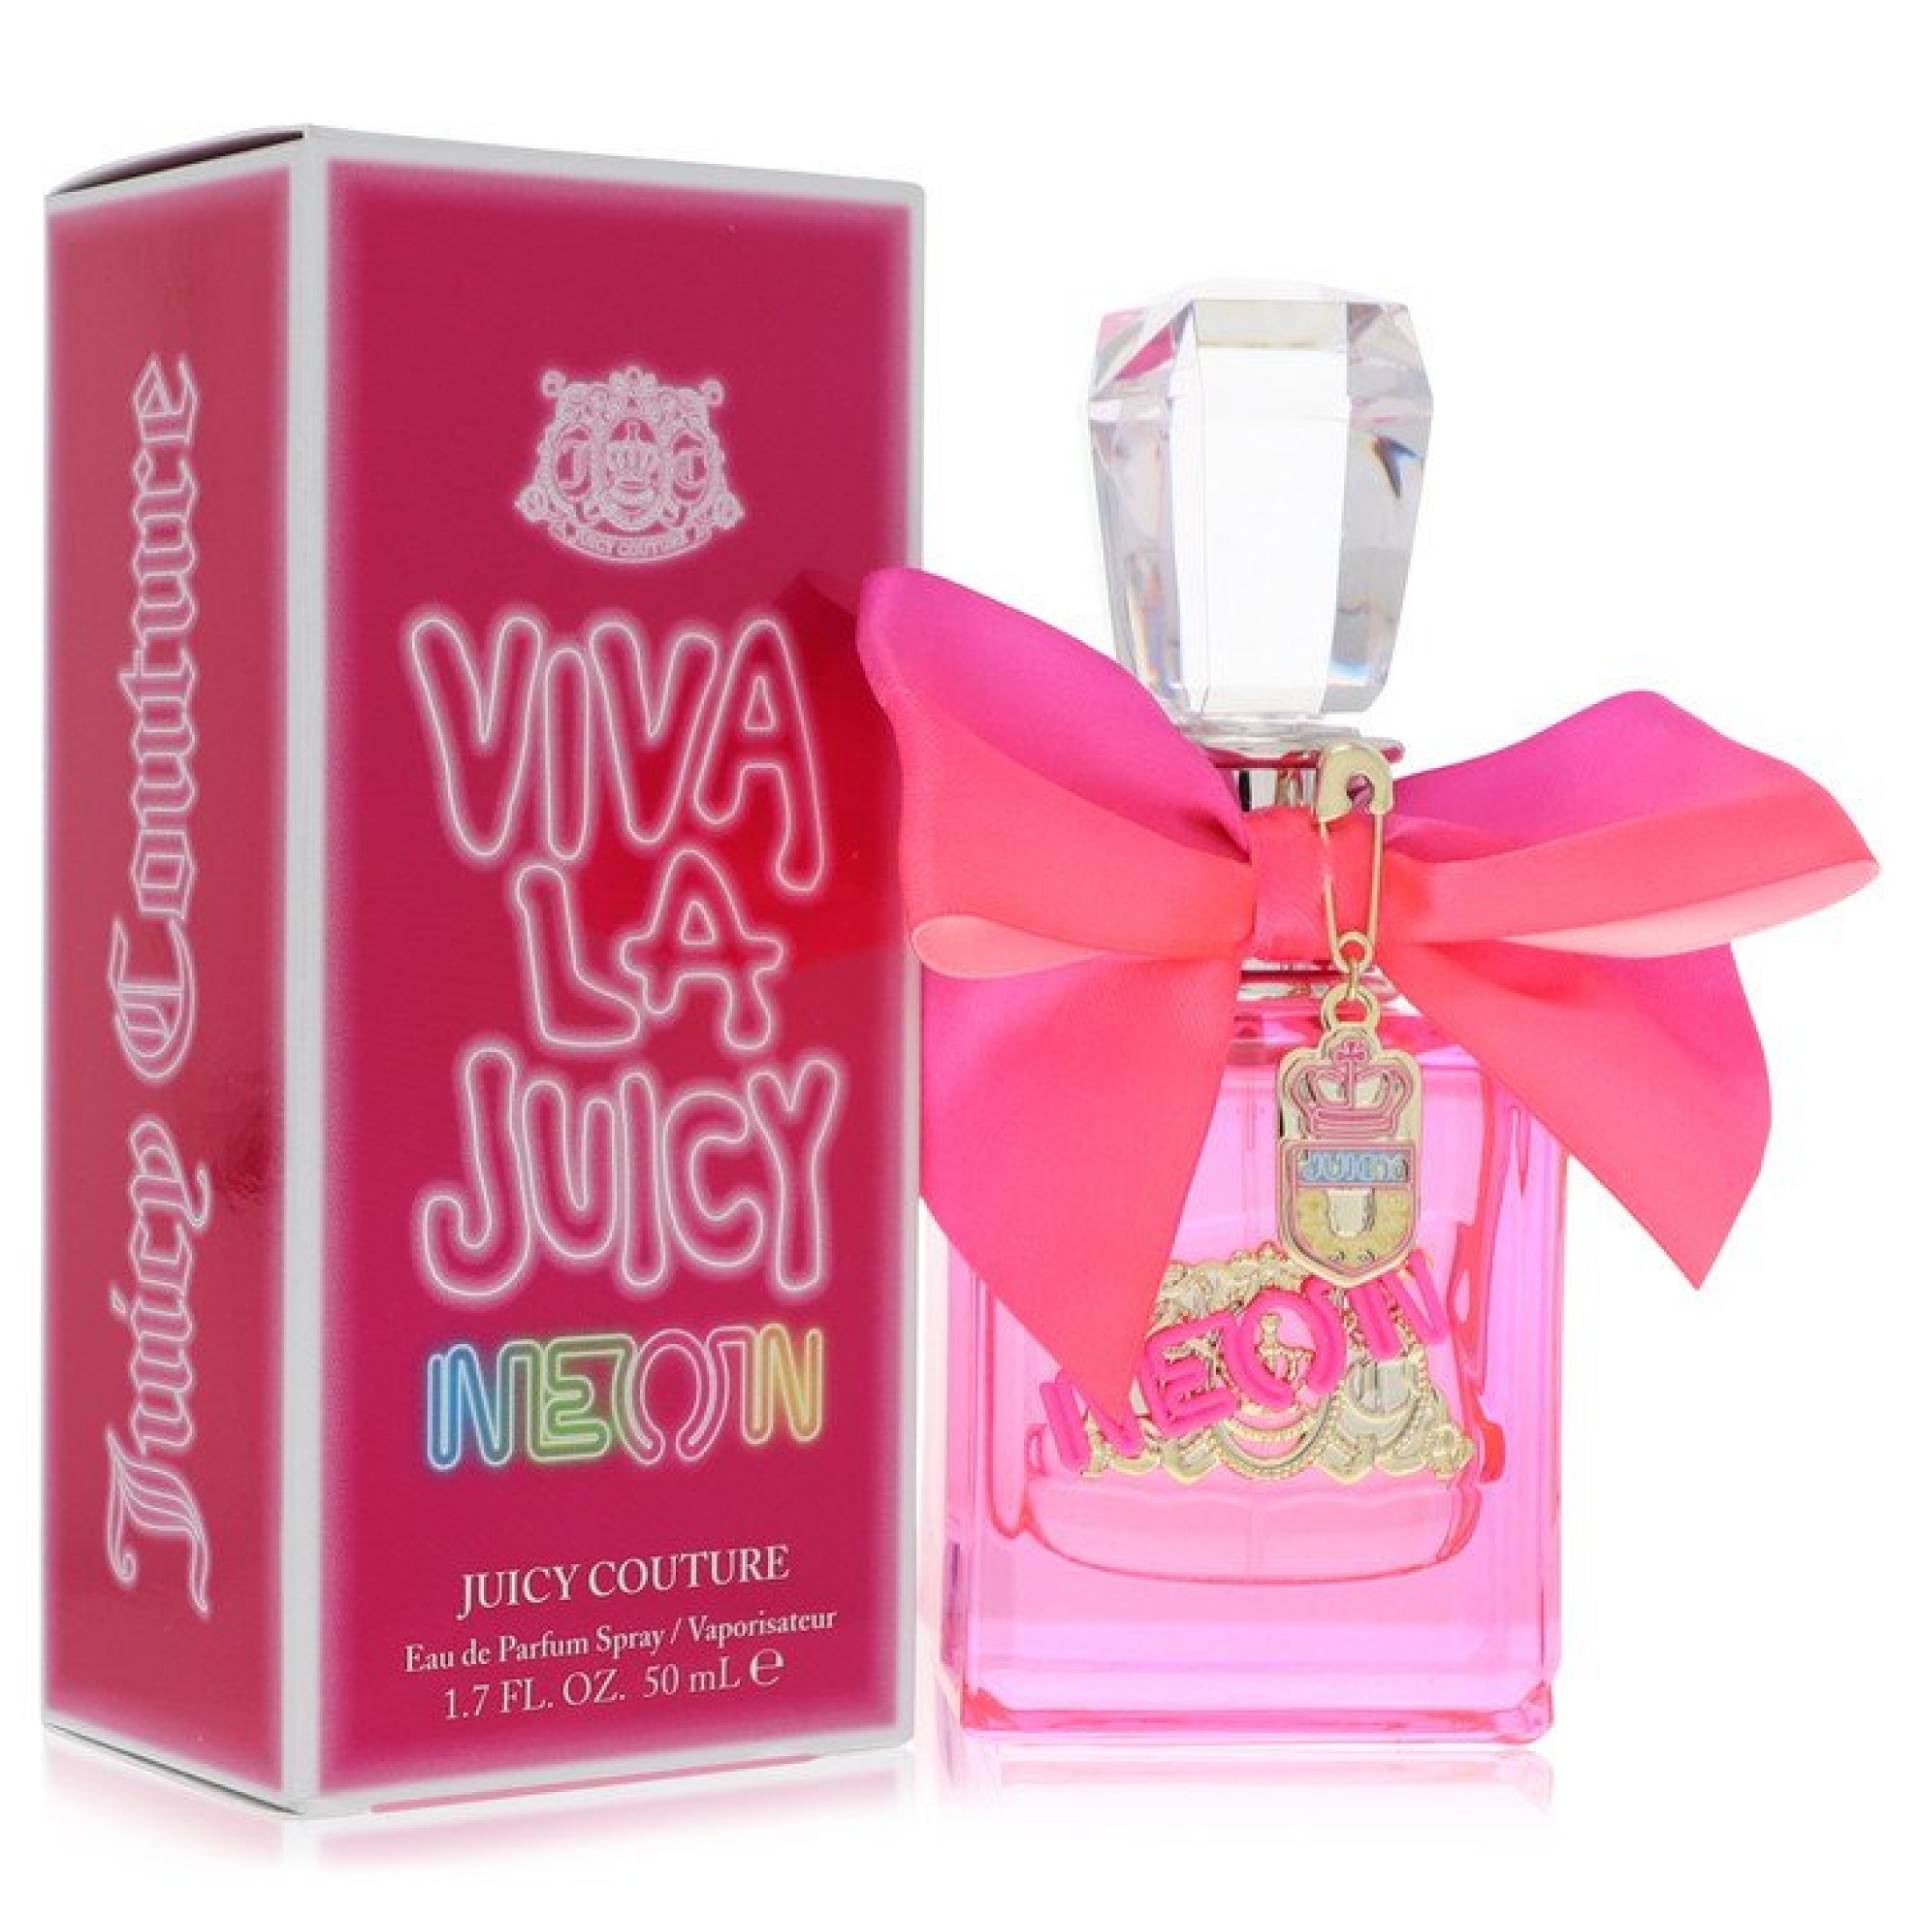 Juicy Couture Viva La Juicy Neon Eau De Parfum Spray 51 ml von Juicy Couture